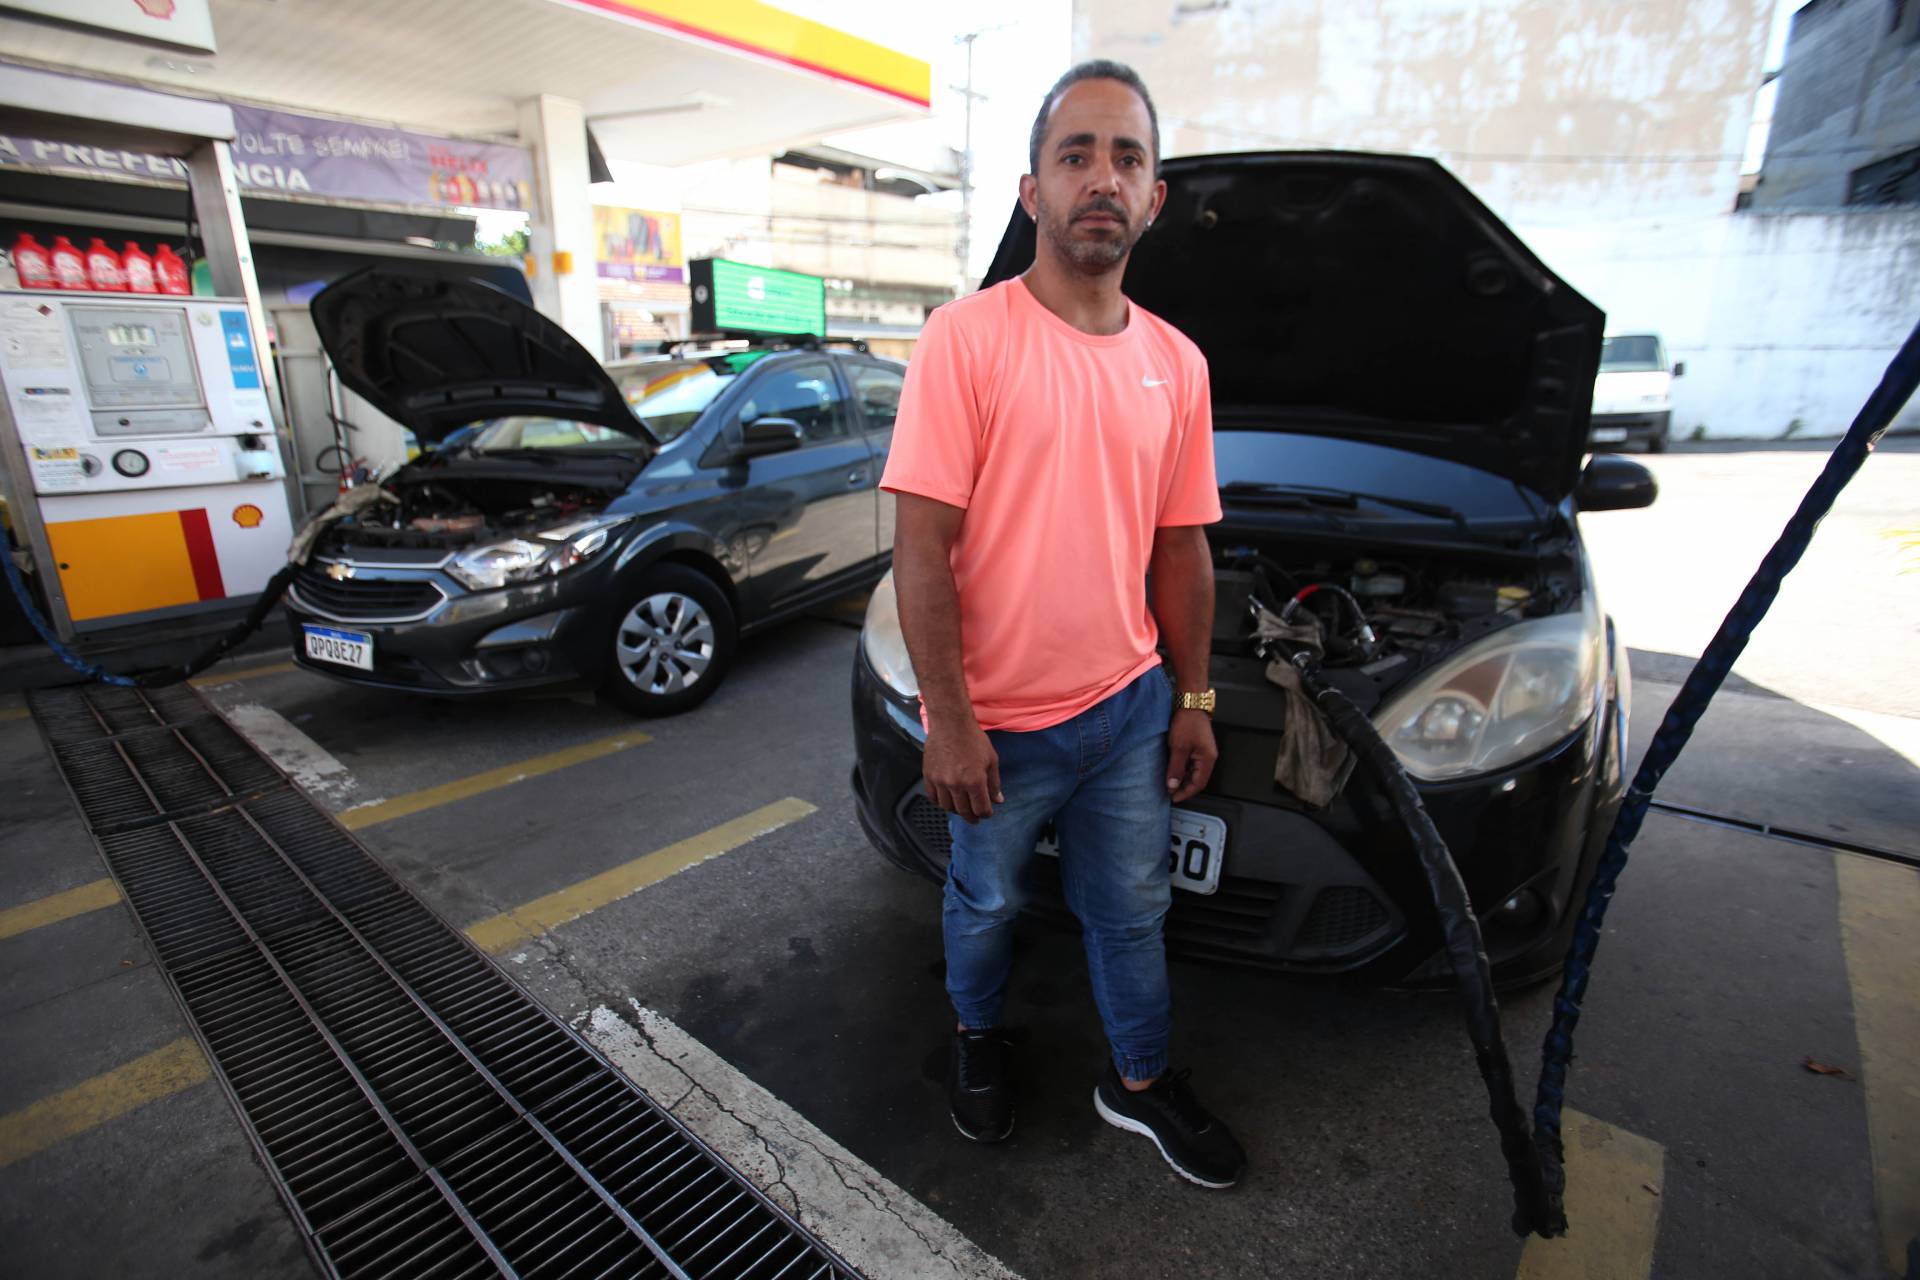 Com a alta do preço dos combustíveis, o motorista autônomo Leonardo Cardoso passou a abastecer o seu carro apenas uma vez ao mês - Cléber Mendes/Agência O Dia